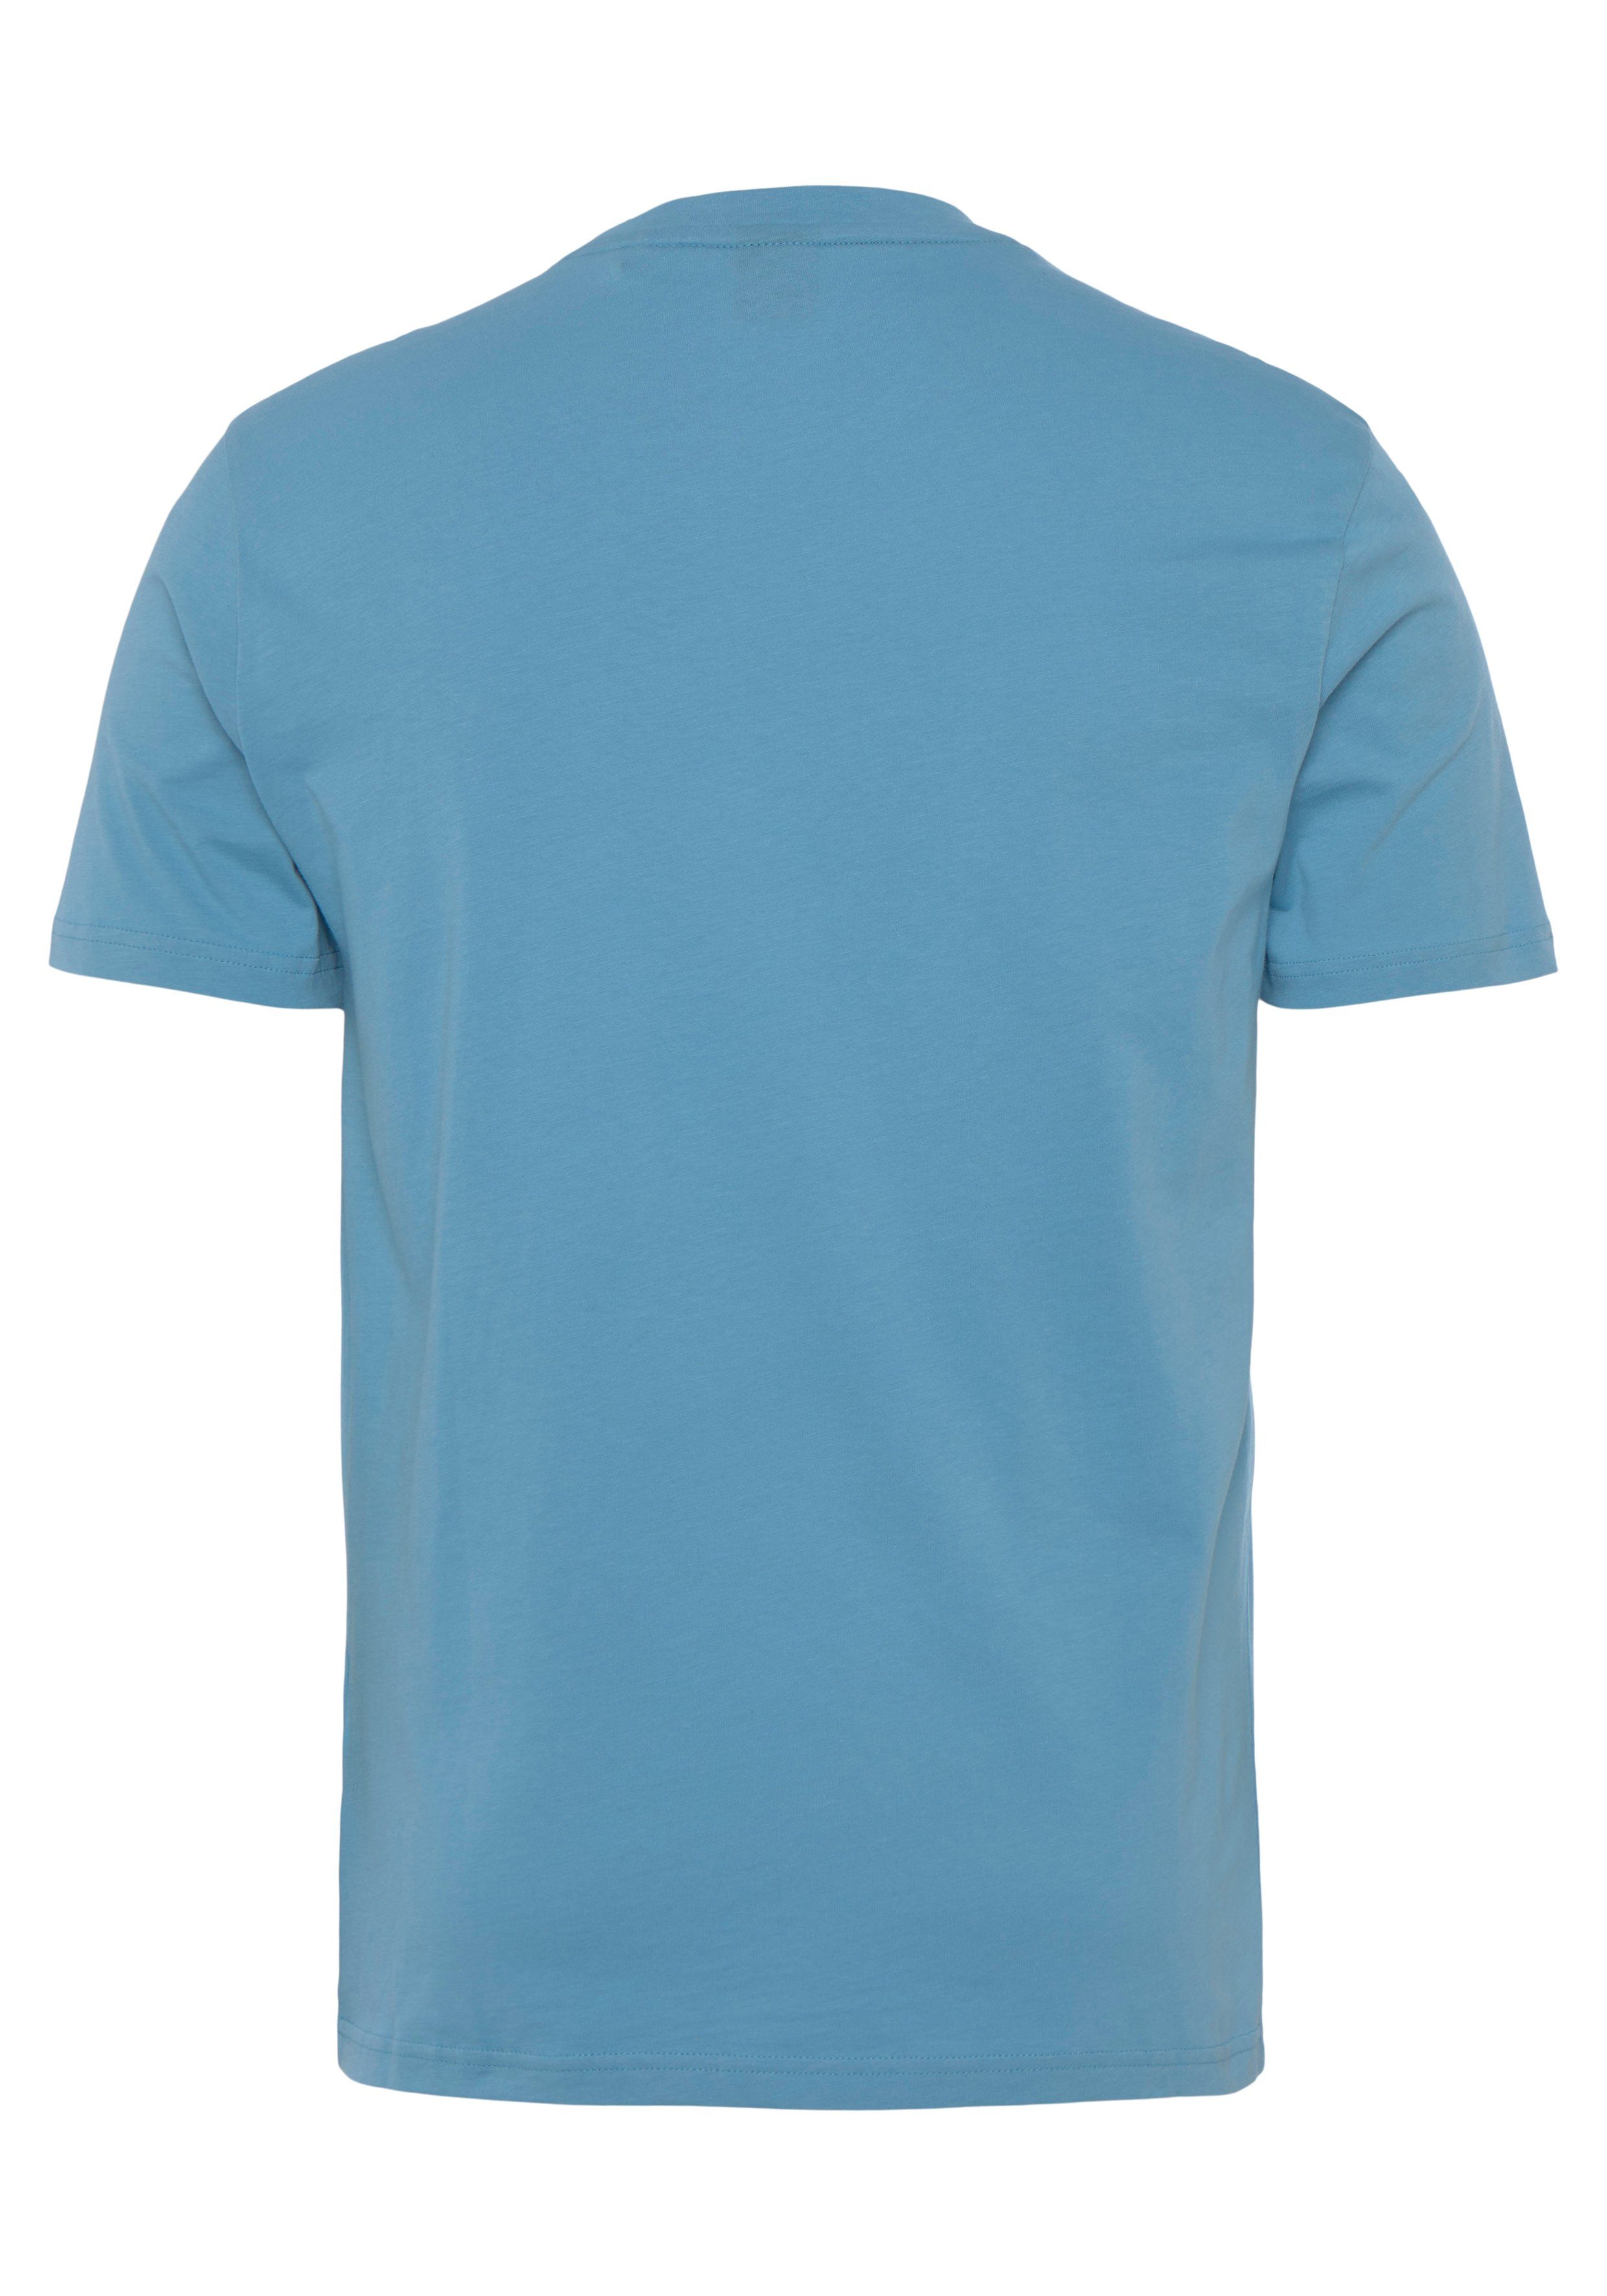 BOSS ORANGE der Blue 1 Open auf Thinking mit großem T-Shirt BOSS 10246016 493 Brust 01 Druck